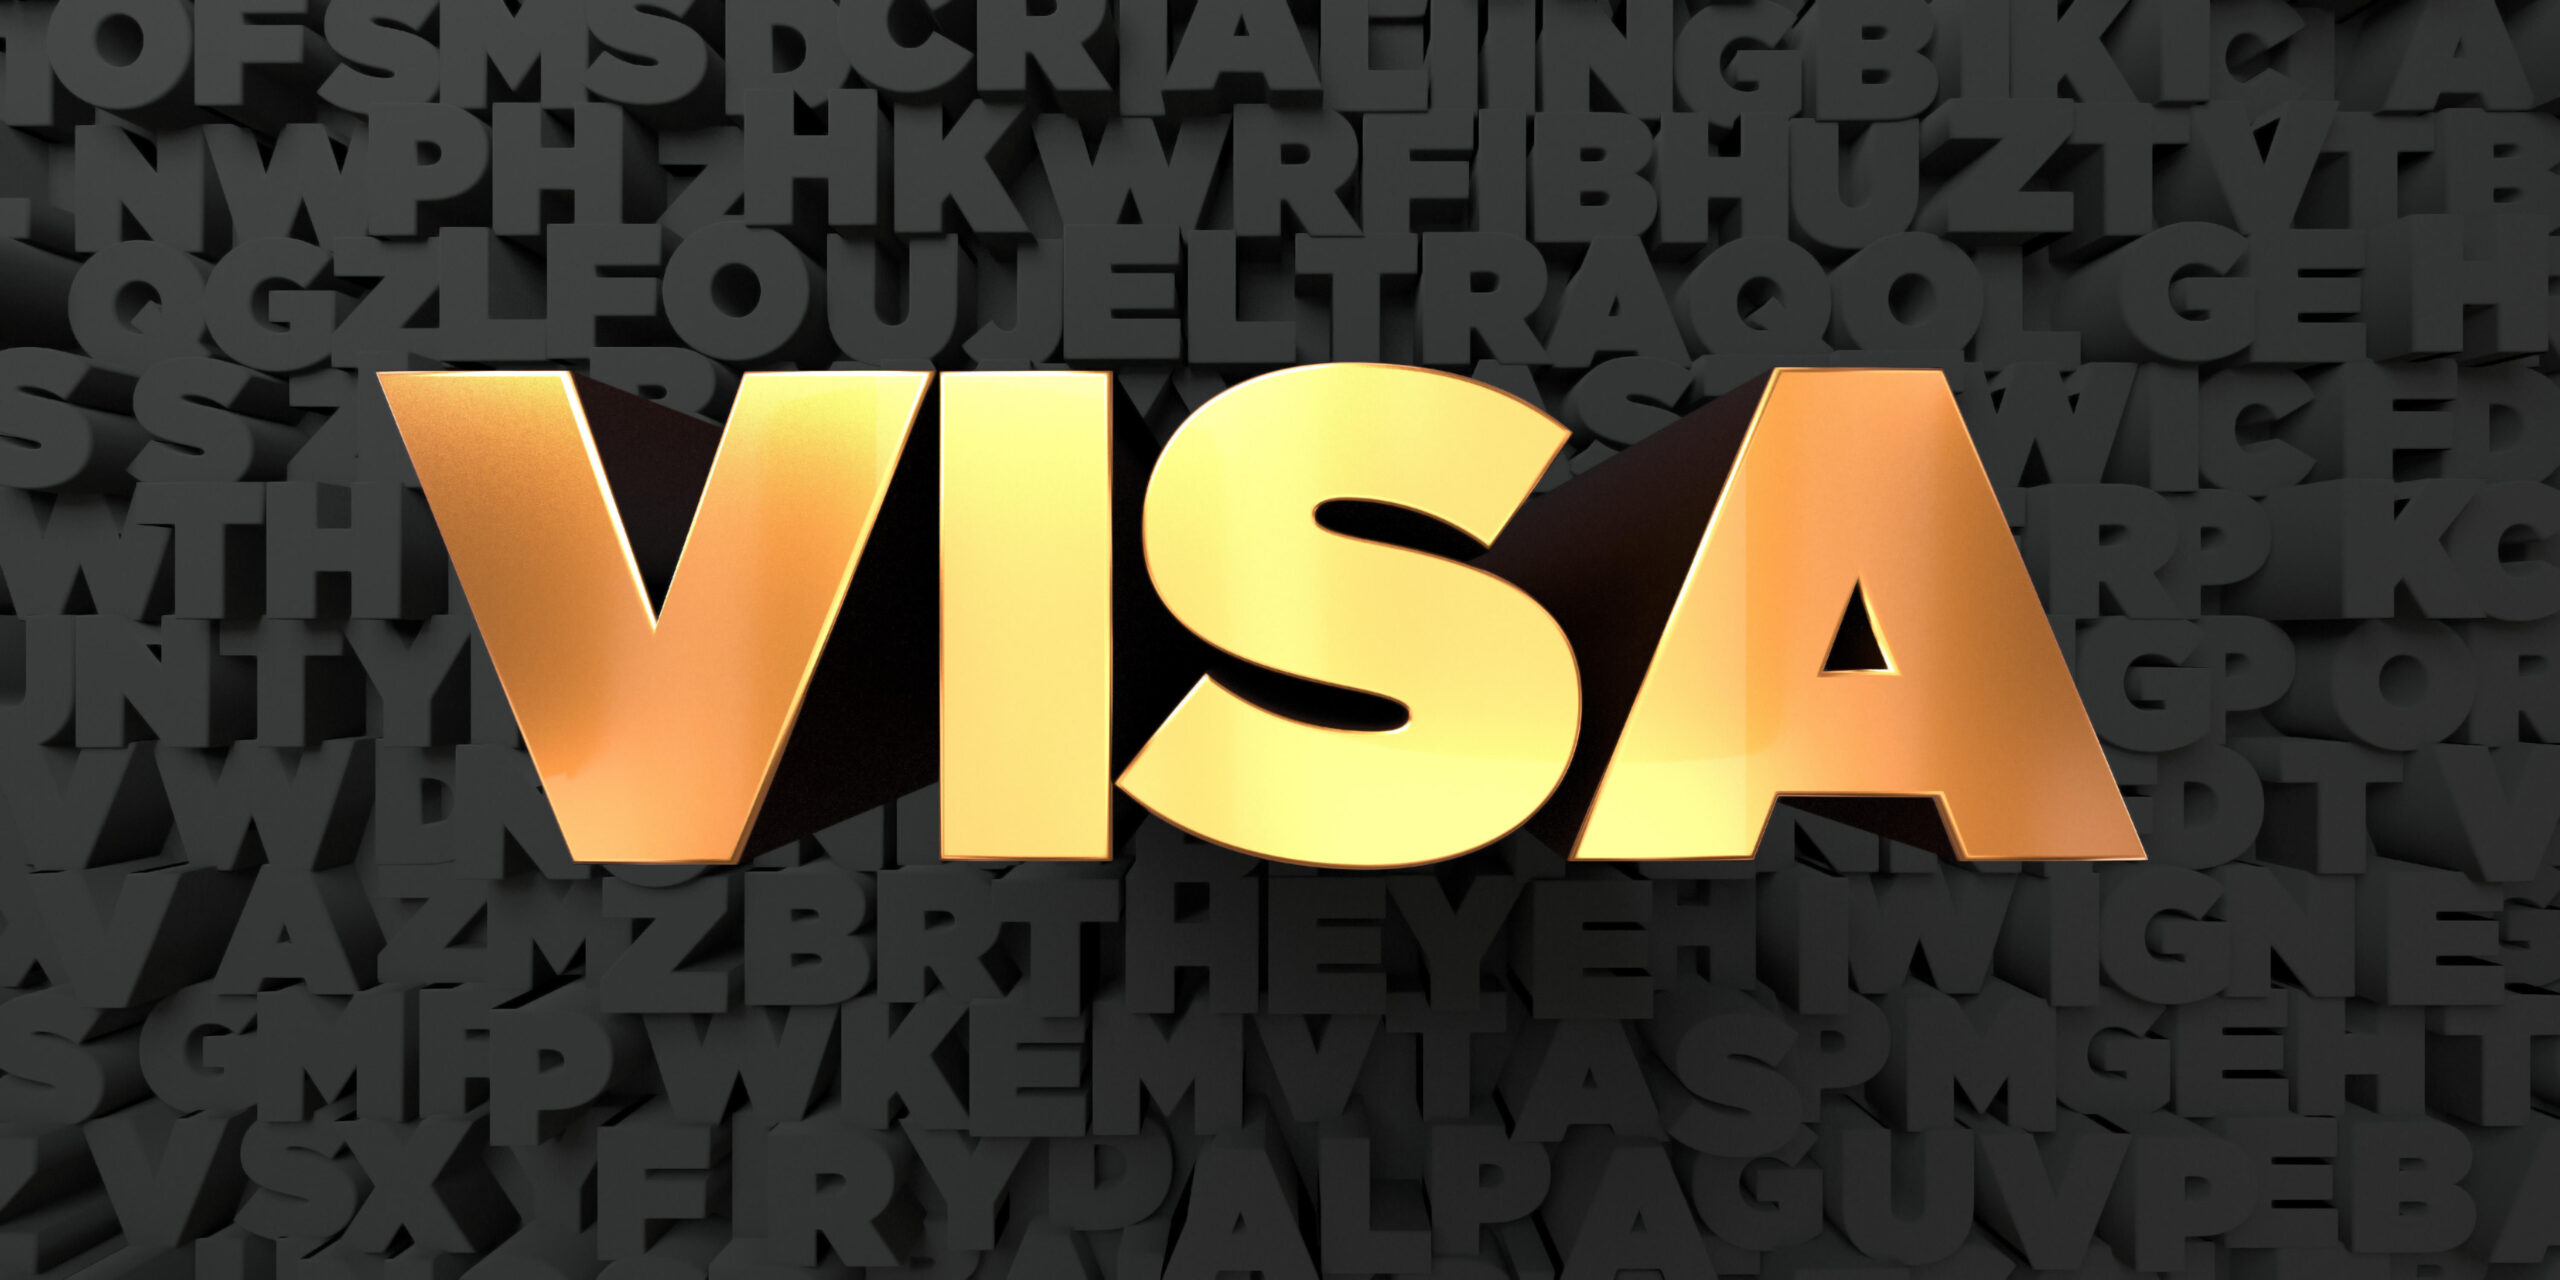 Spain’s Digital Nomad Visa approved!